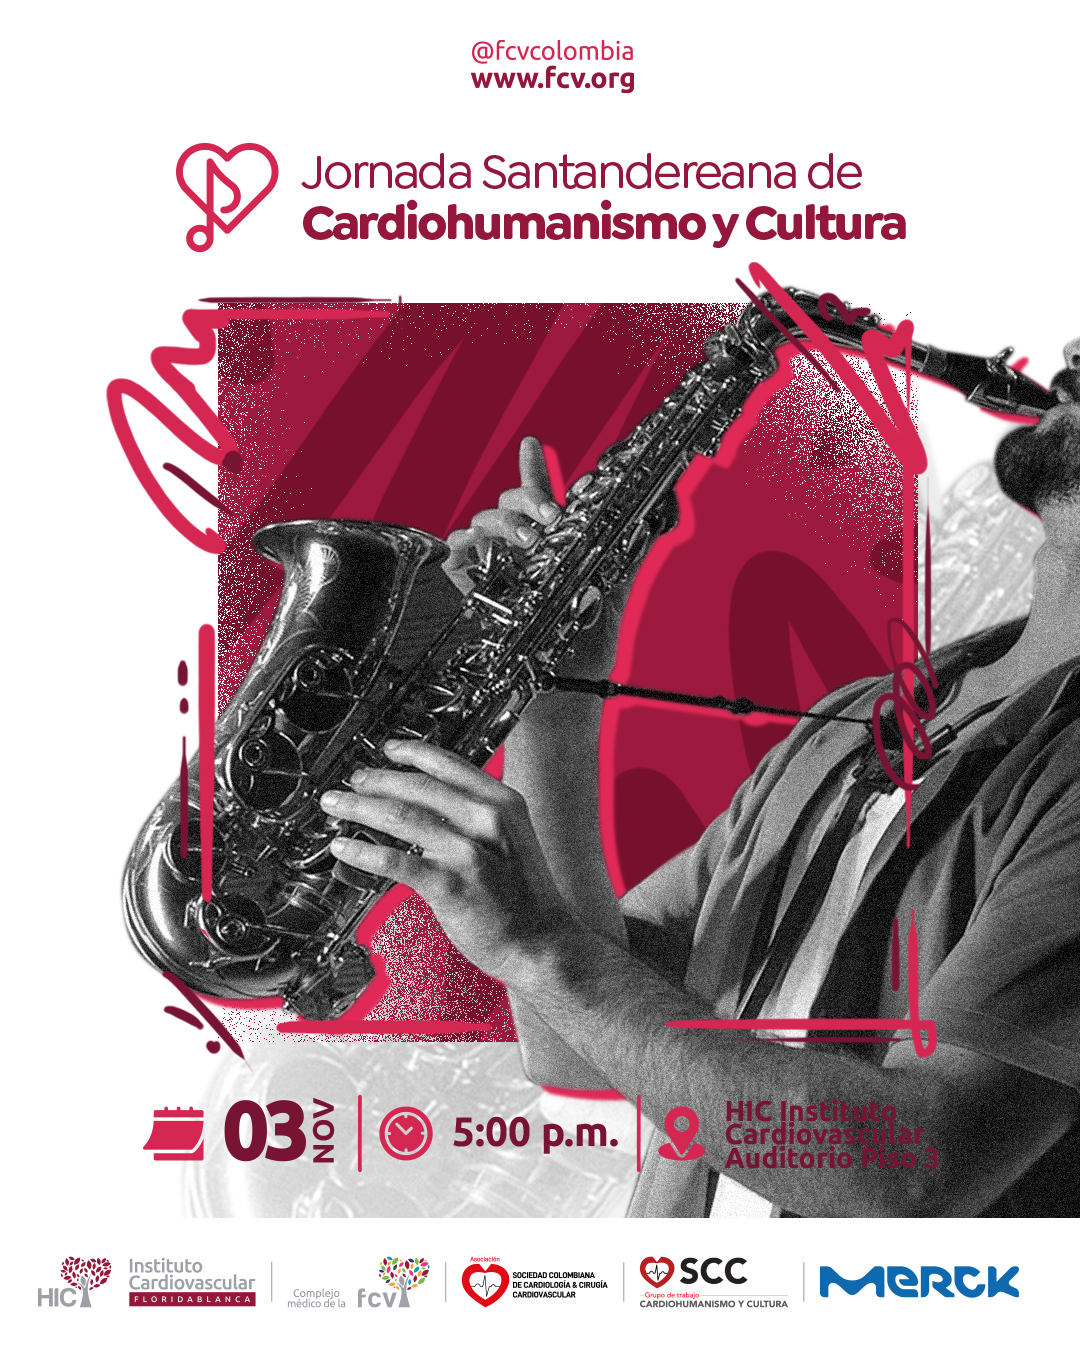 Jornada Santandereana de cardiohumanismo y cultura 